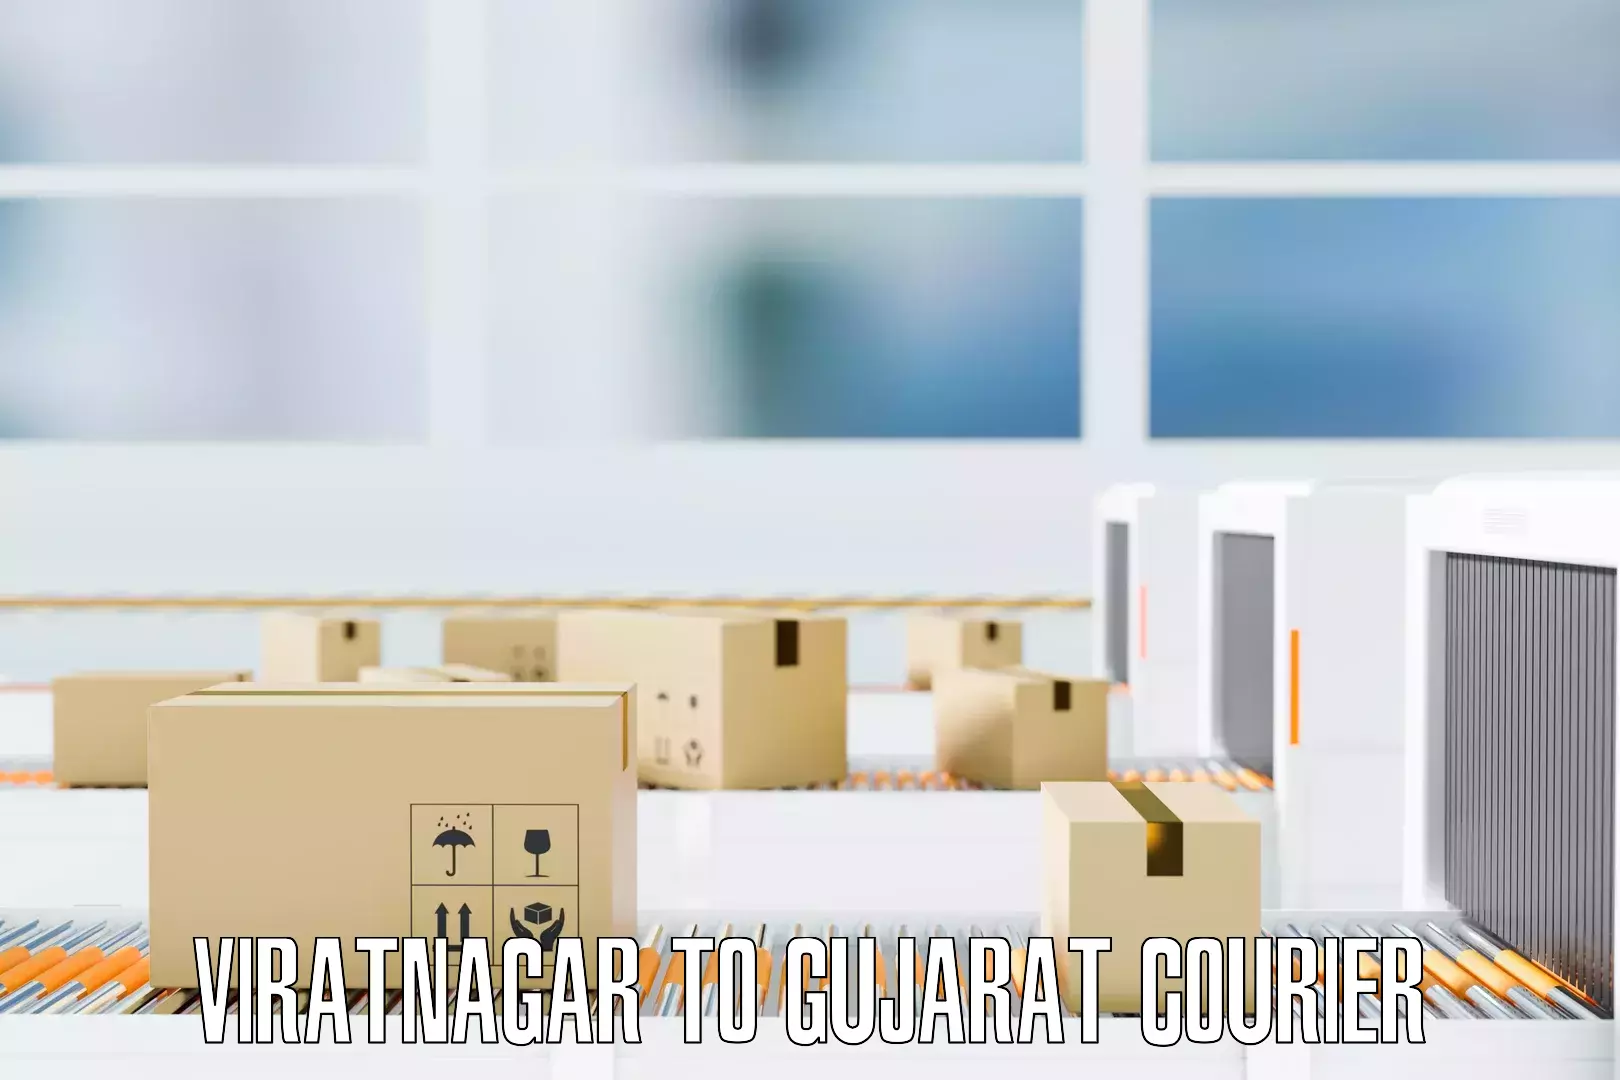 Furniture transport service Viratnagar to Umreth